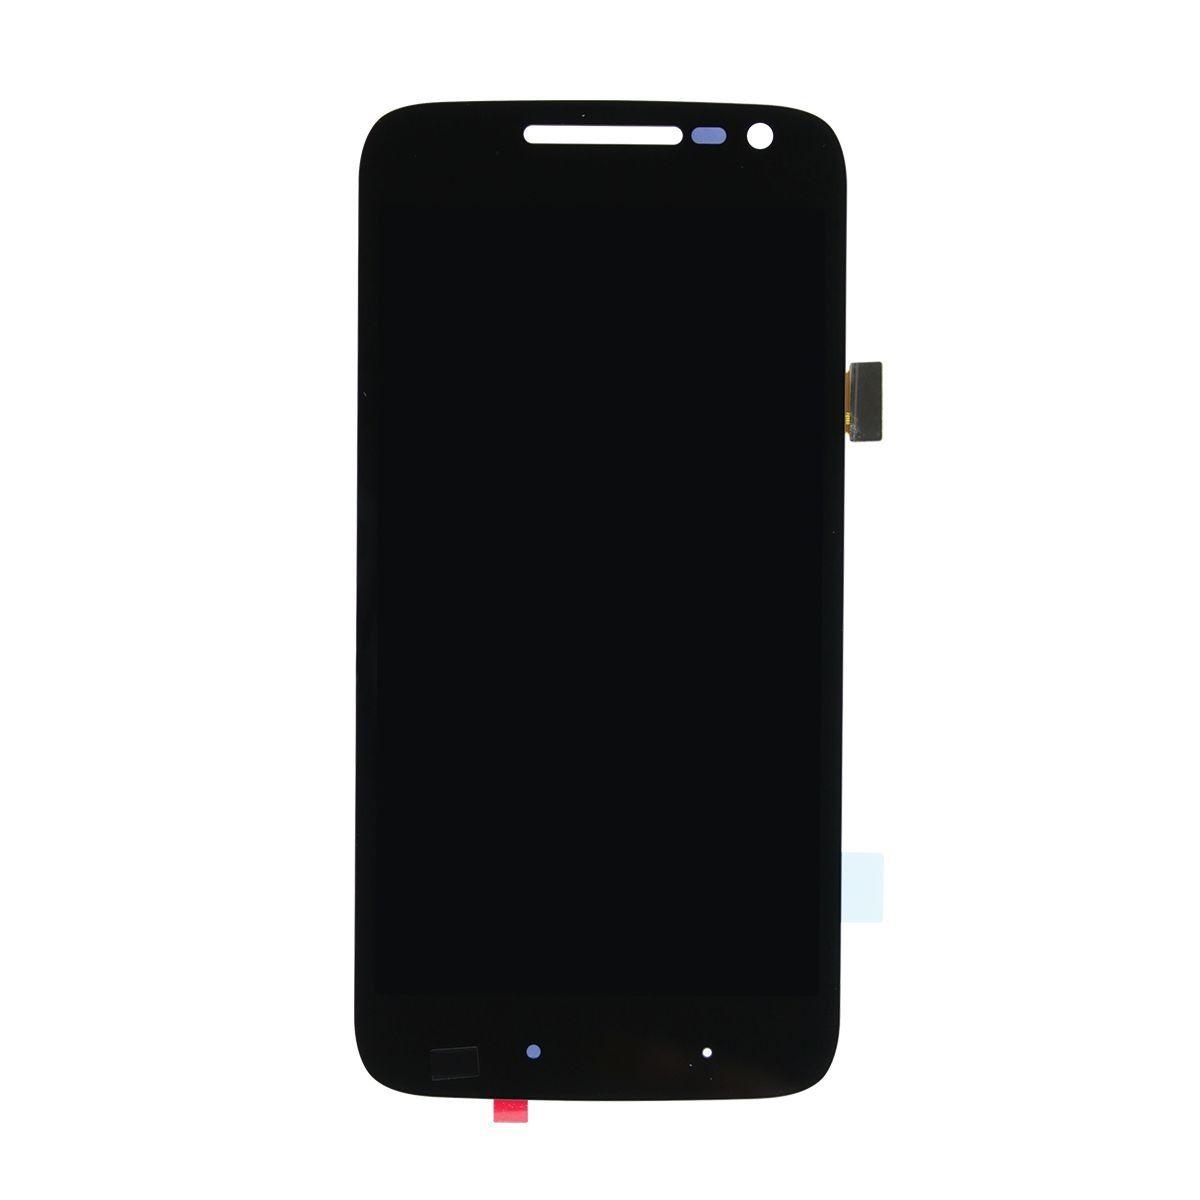 Wyświetlacz LCD + ekran dotykowy Motorola Moto G4 play XT1607/XT1064 czarny